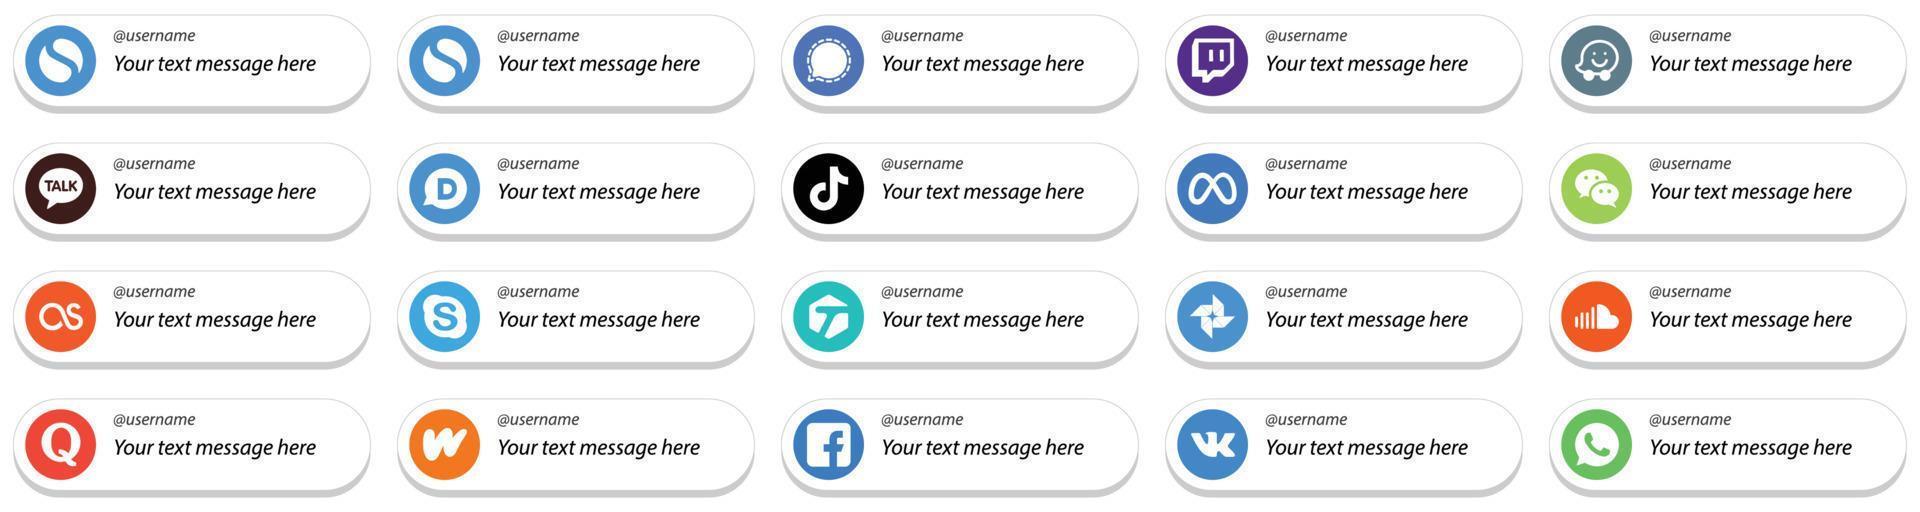 sígueme íconos de redes sociales con paquete de 20 mensajes personalizables como lastfm. wechat iconos de tiktok y facebook. limpio y minimalista vector